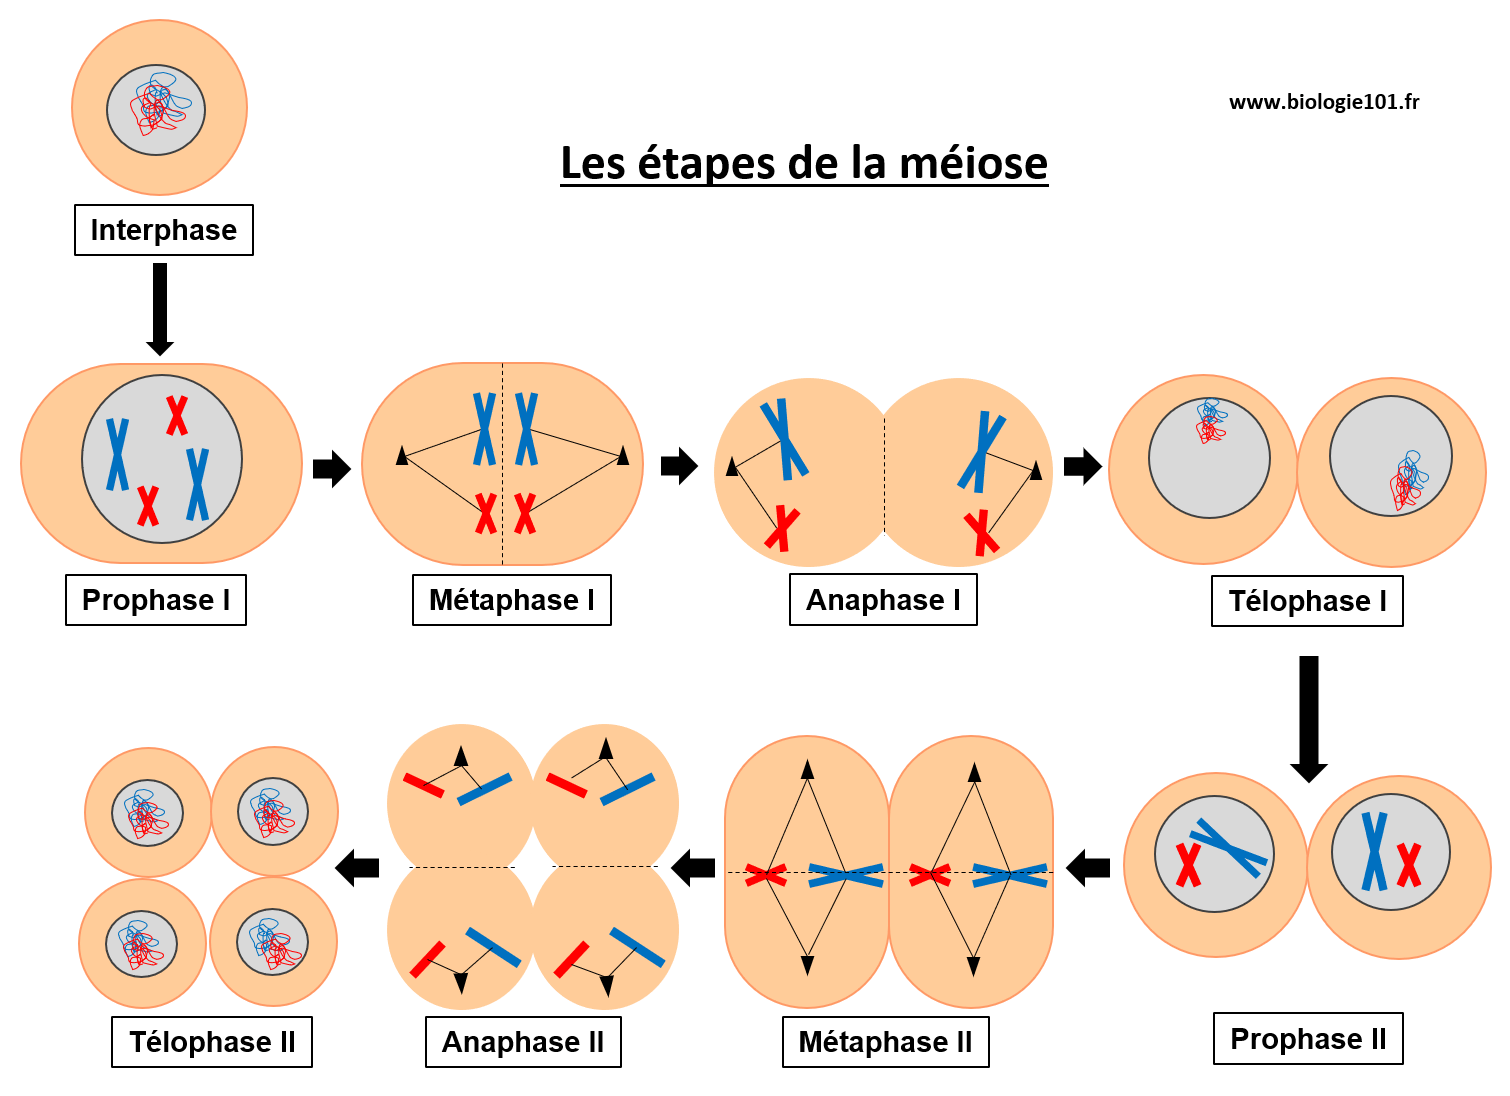 Les étapes de la méiose lors des deux divisions successives : Prophase I, Métaphase I, Anaphase I, Télophase I et Prophase II, Métaphase II, Anaphase II, Télophase II. 